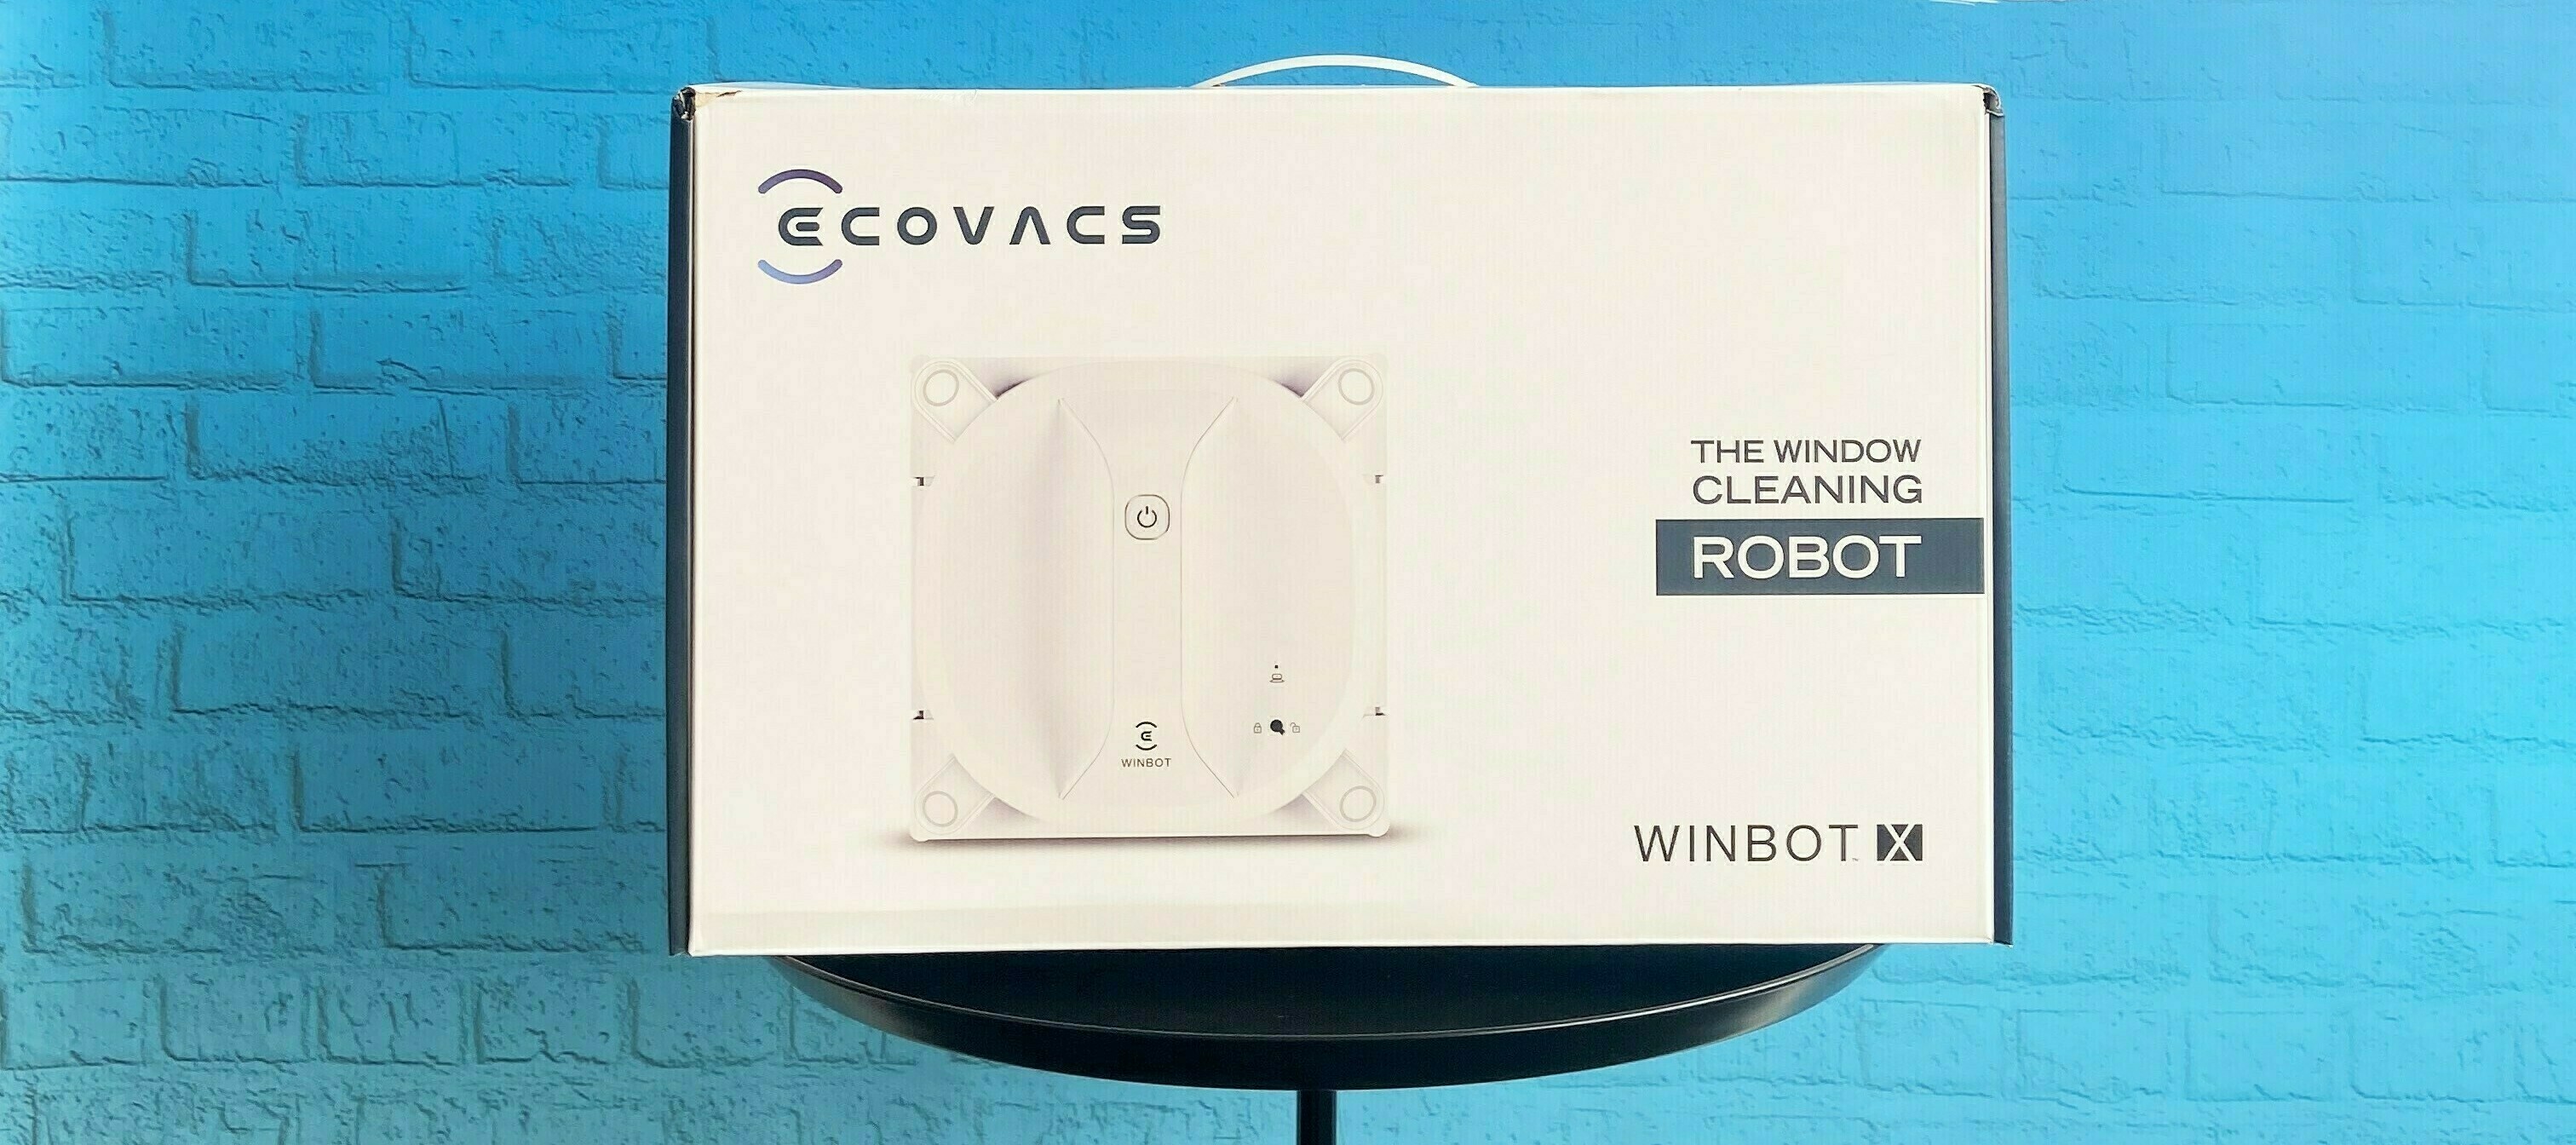 Winbot X Ecovacs Fensterreinigungsroboter - das Testgerät für deinen Frühjahrsputz!